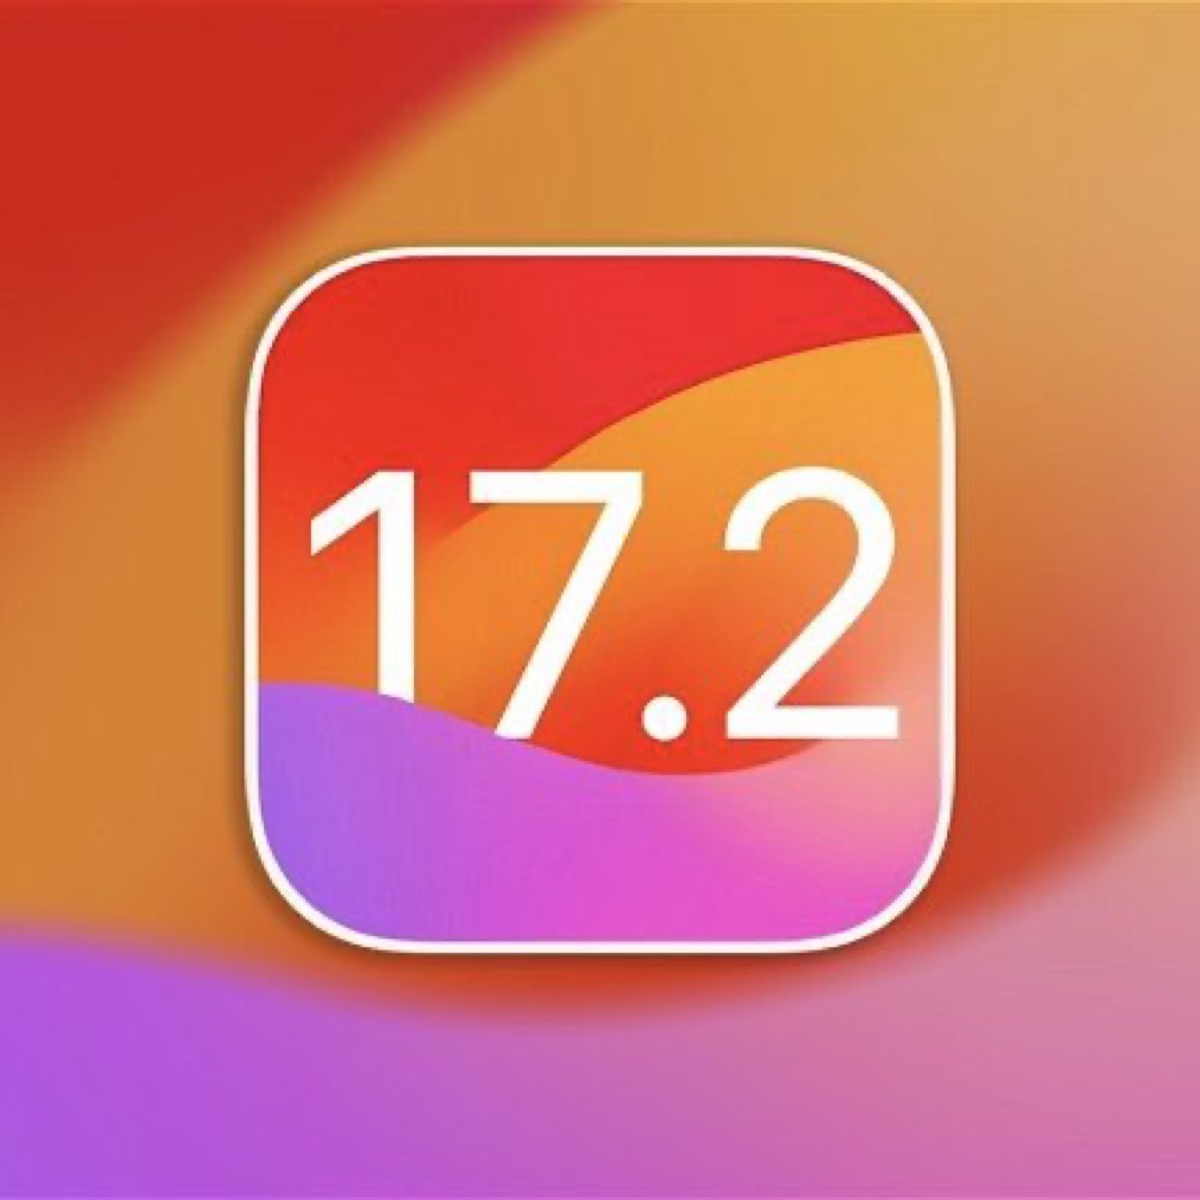 iOS172